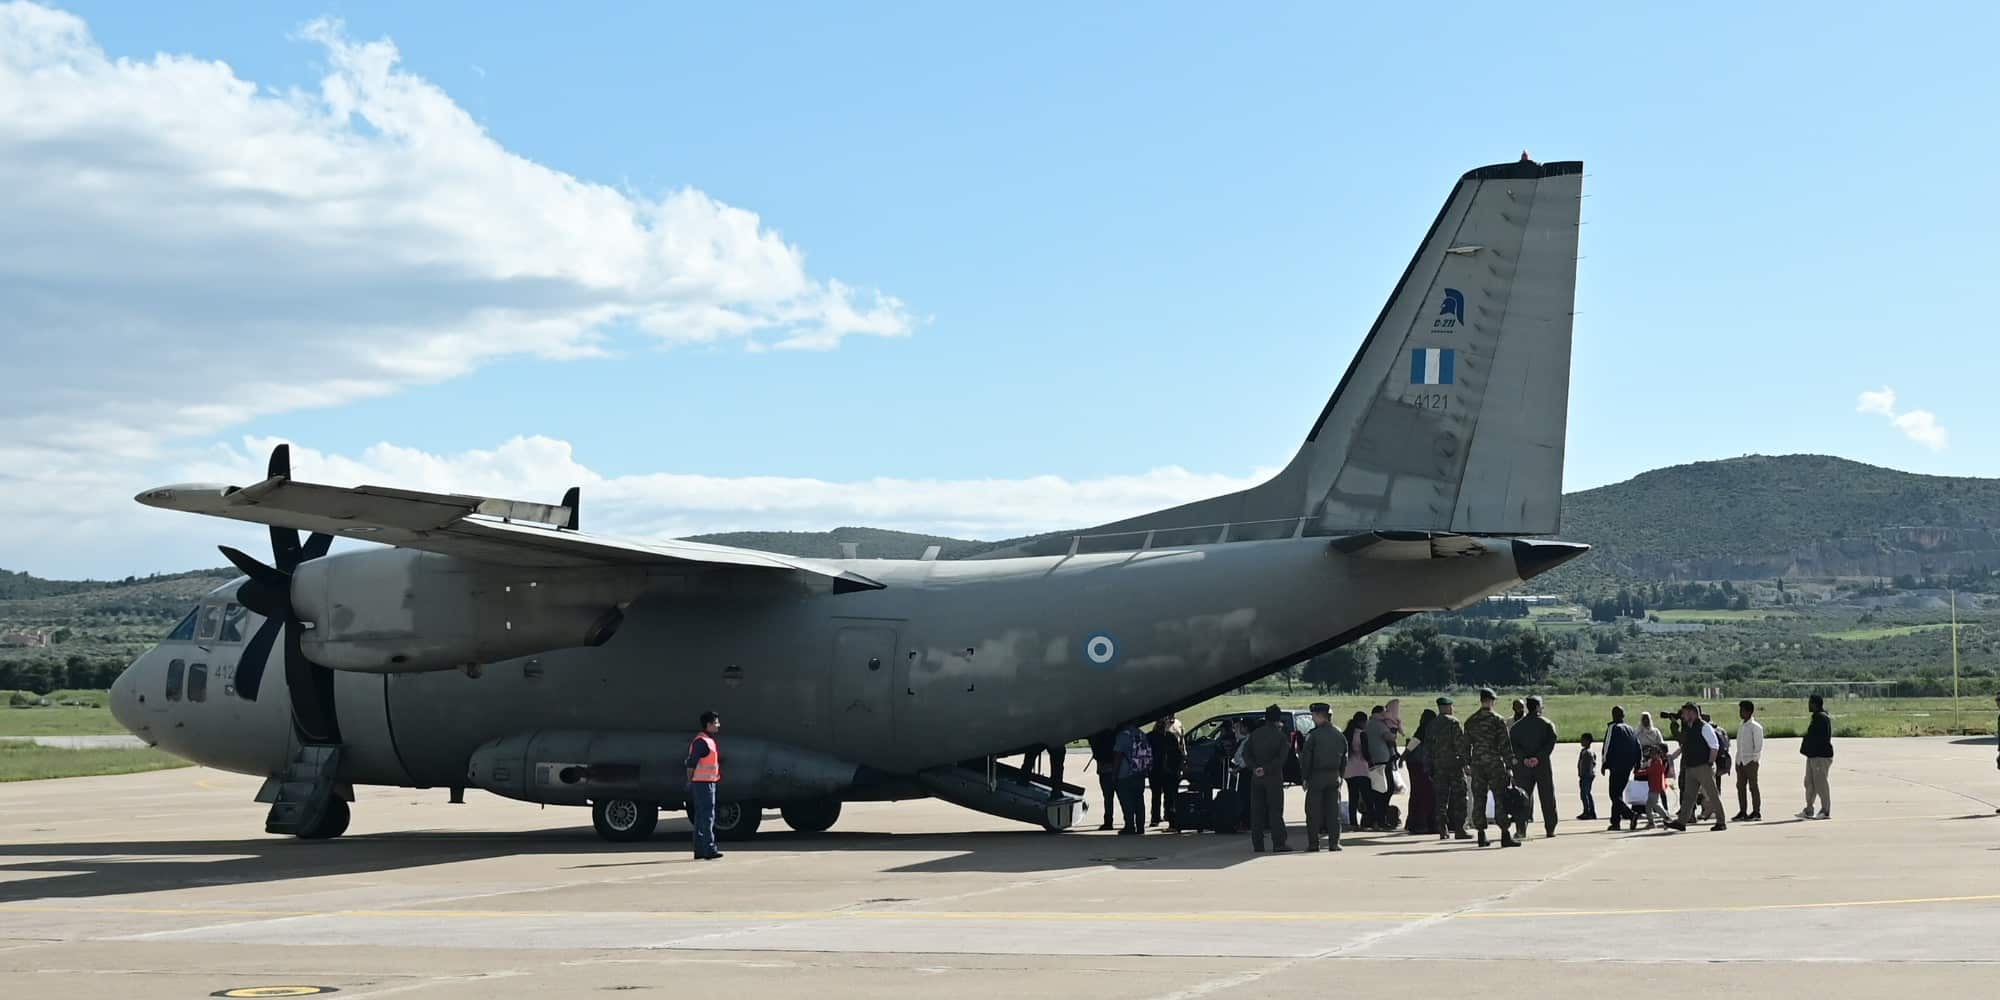 Στο αεροδρόμιο της Τανάγρας το αεροσκάφος της Πολεμικής Αεροπορίας που μεταφέρει ομογενείς από το Σουδάν